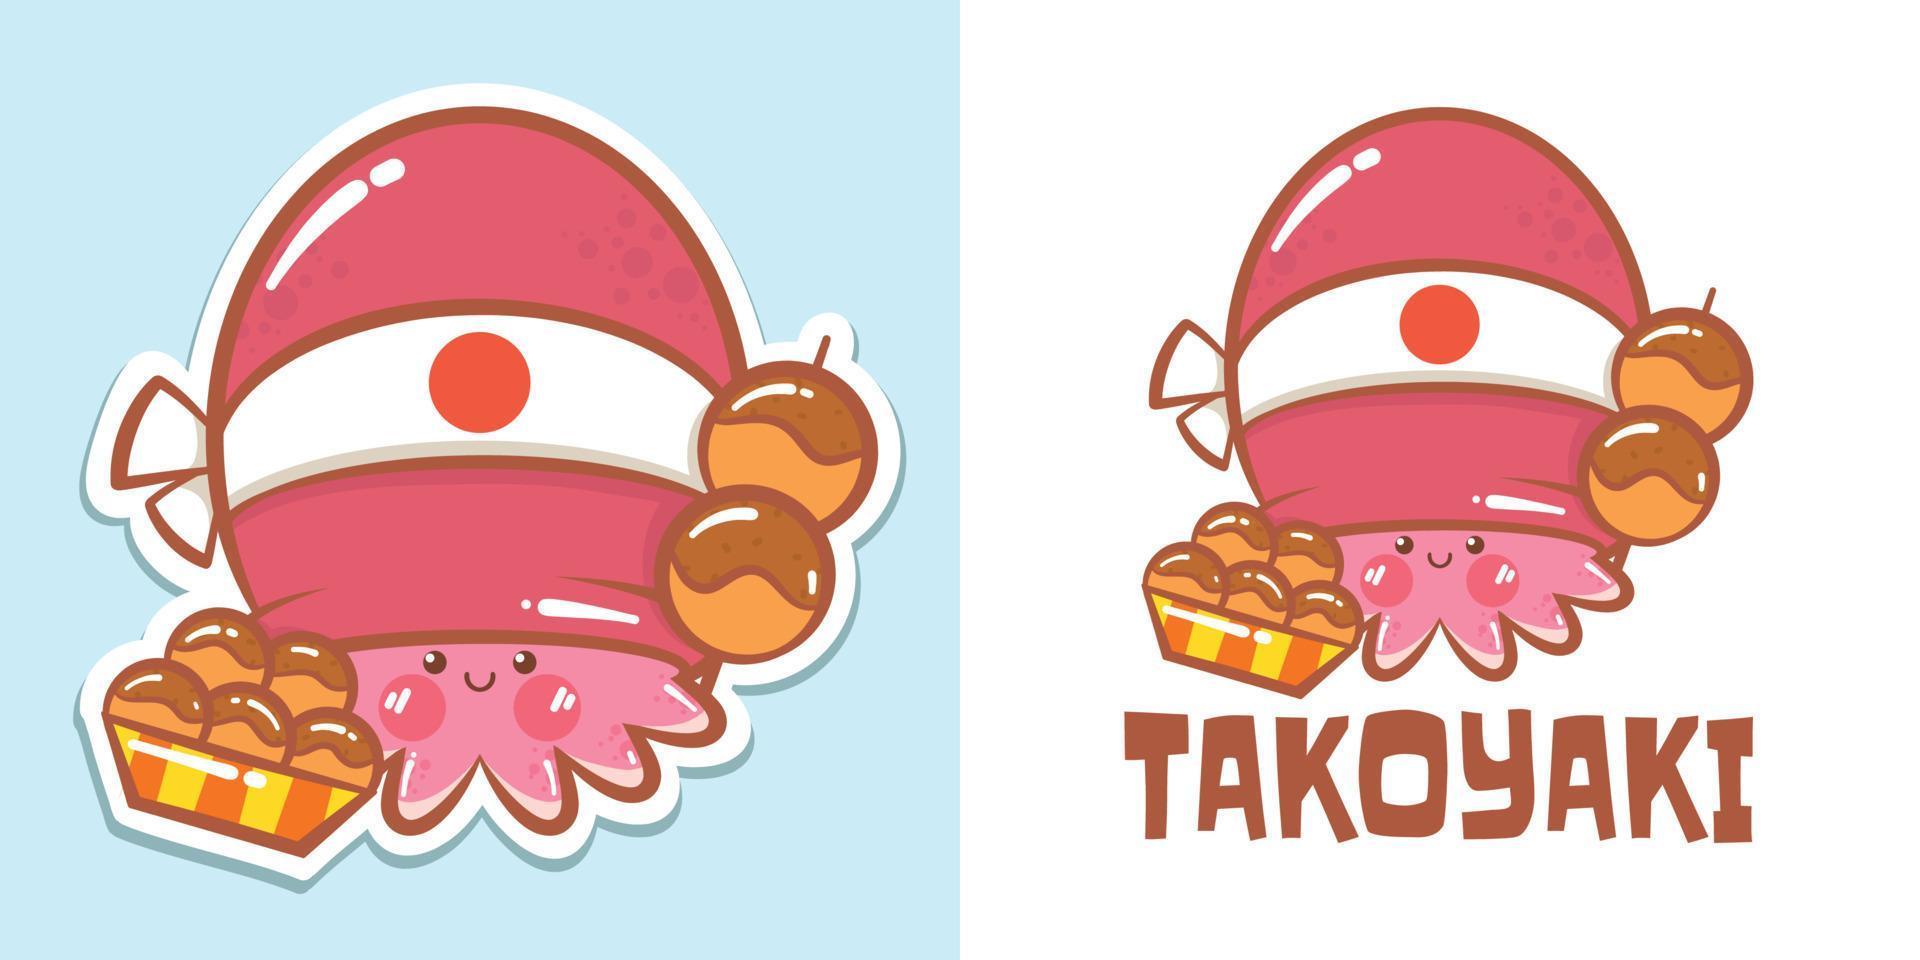 un simpatico personaggio dei cartoni animati di polpo takoyaki logo e illustrazione della mascotte vettore